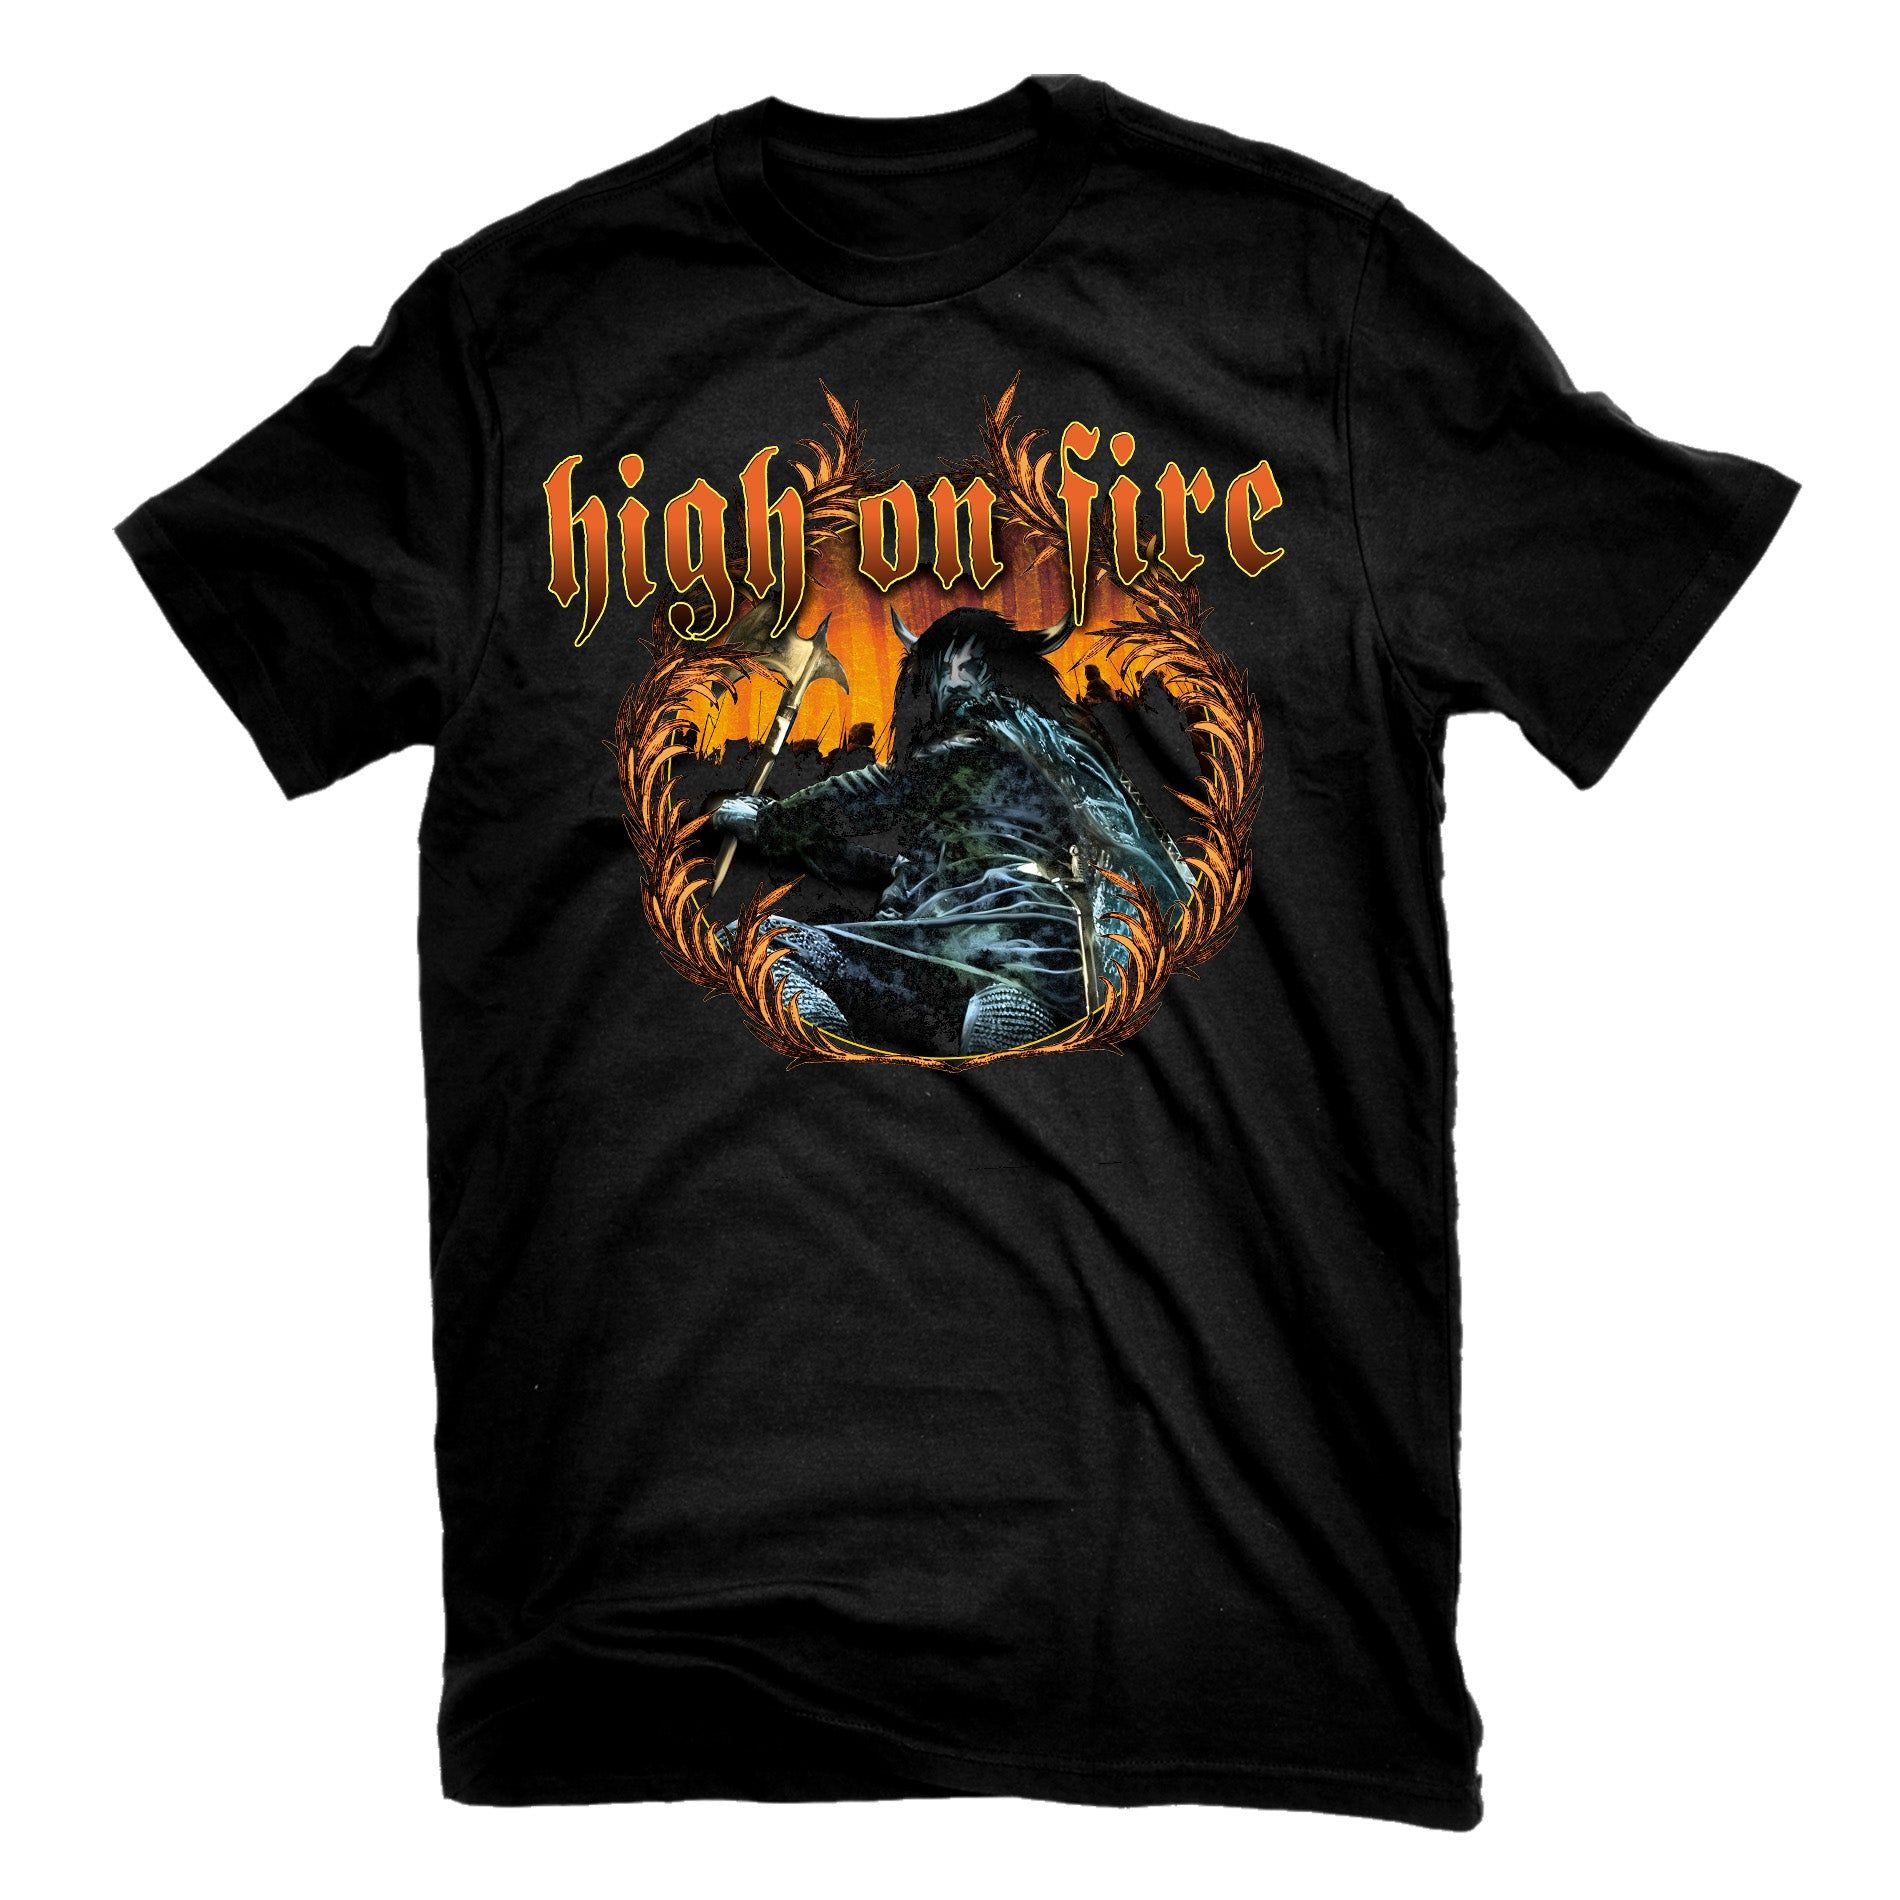 Onfires. Группа High on Fire. Футболка с огненным драконом. Fire on t-Shirt. Bludfire футболка.